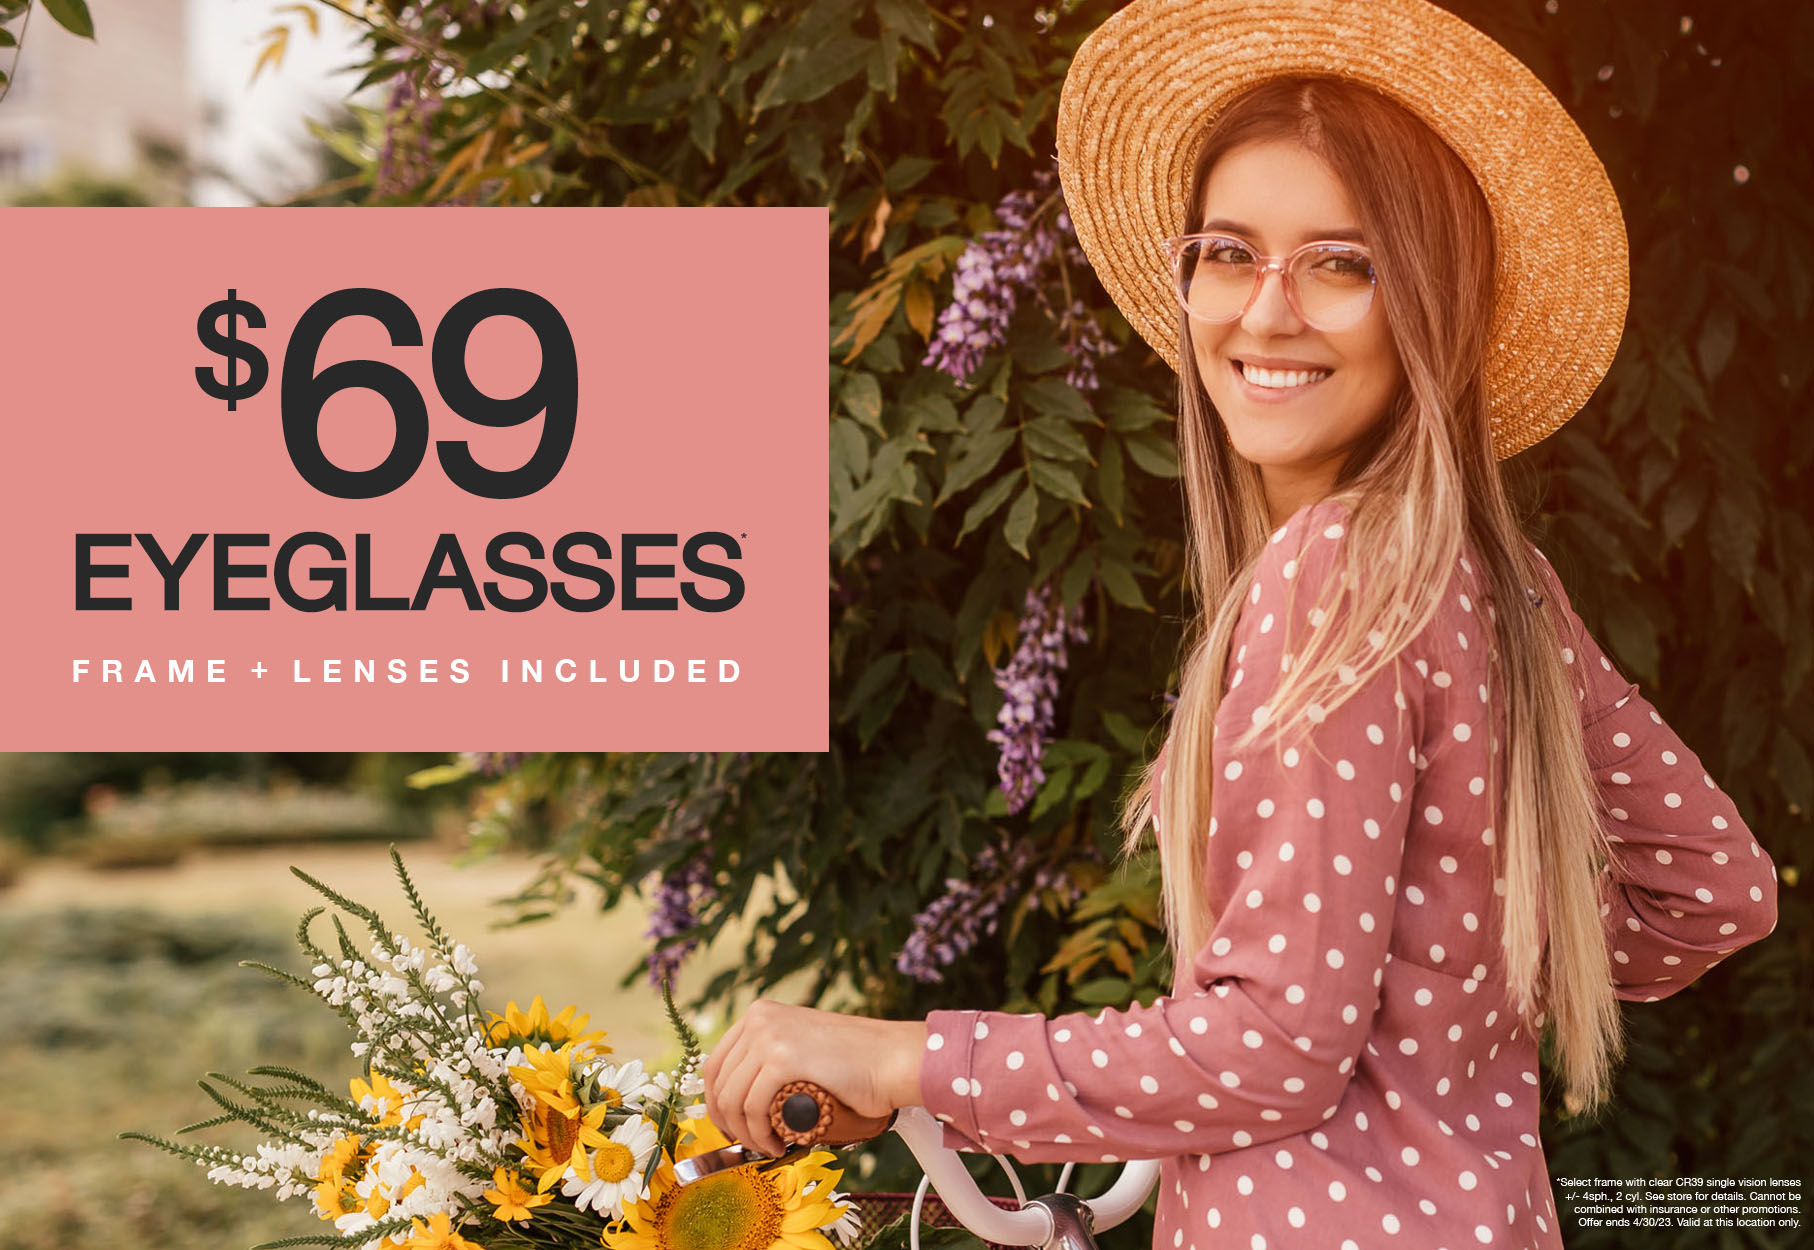 Girl on bike $69 eyeglasses frame plus lenses included